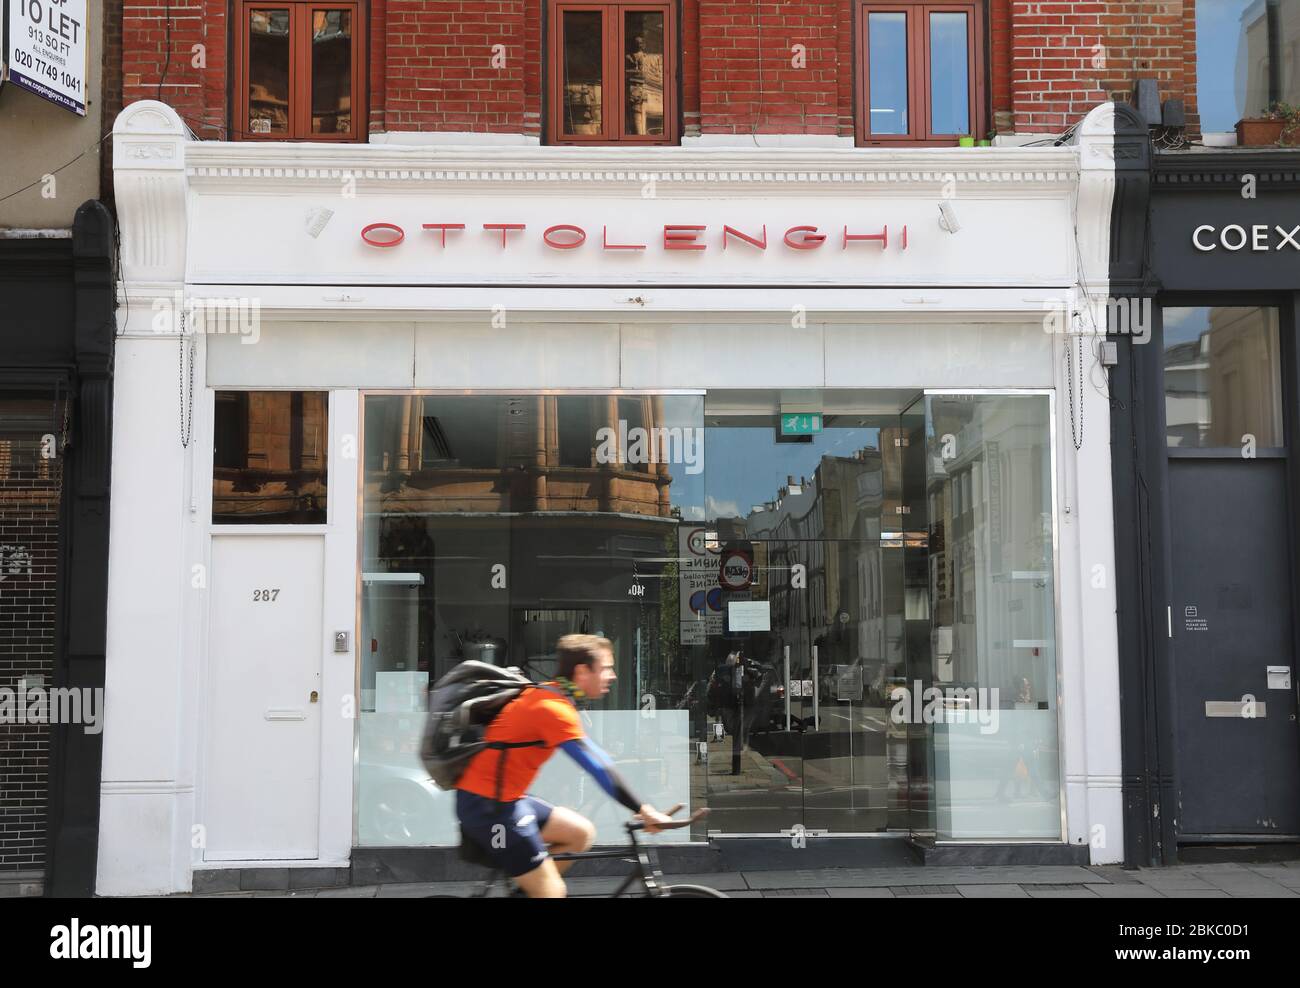 Le restaurant Ottolenghi, situé sur Upper Street, Islington, a fermé ses portes dans le cadre du verrouillage épidémique du coronavirus, dans le nord de Londres, au Royaume-Uni Banque D'Images